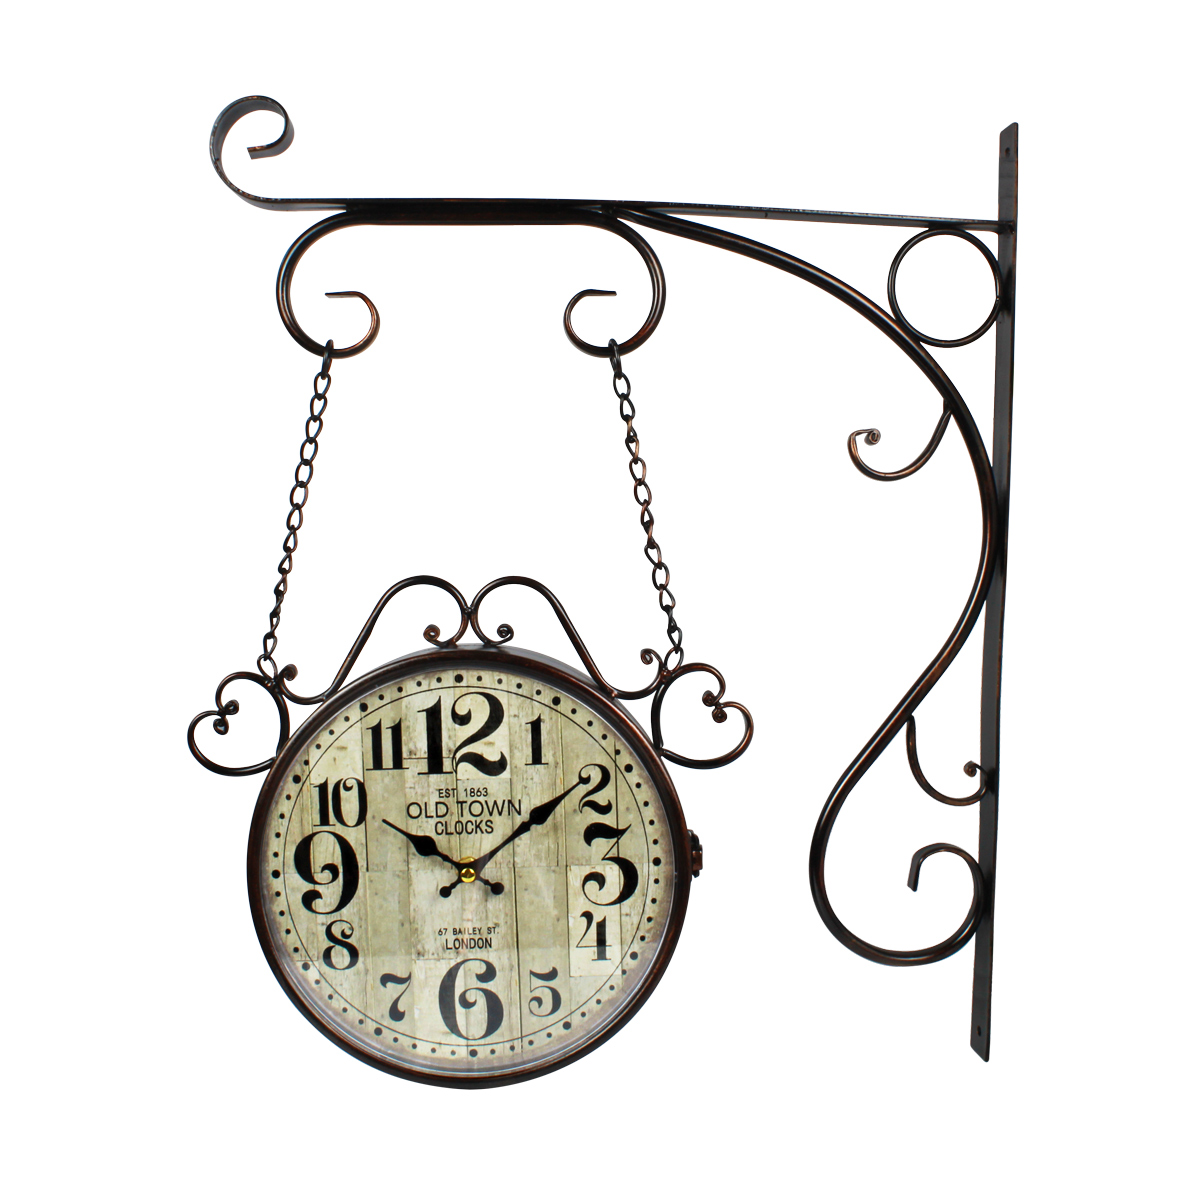 Relogio De Parede Estacao De Trem Old Town Clocks C/ Corrente 1863  - Grupo Solmaior